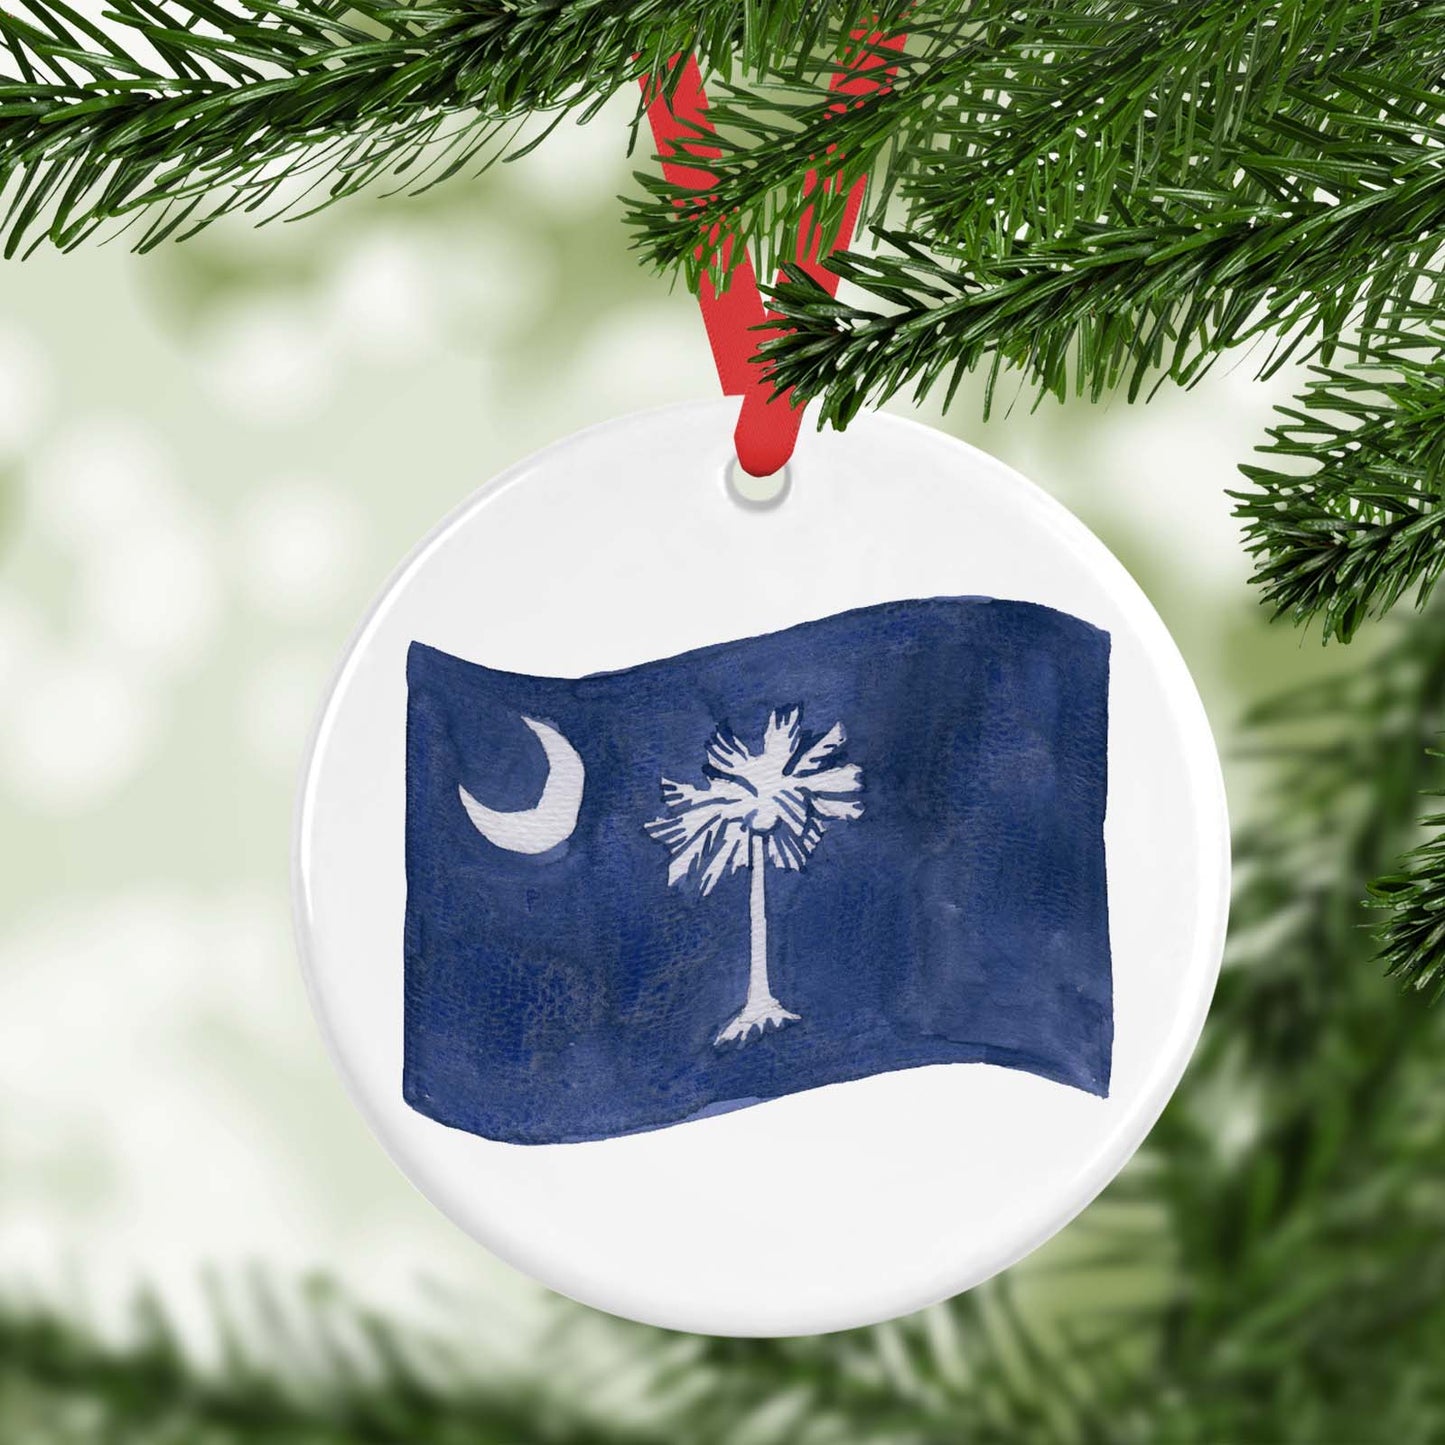 Personalized Ceramic South Carolina Flag Ornament